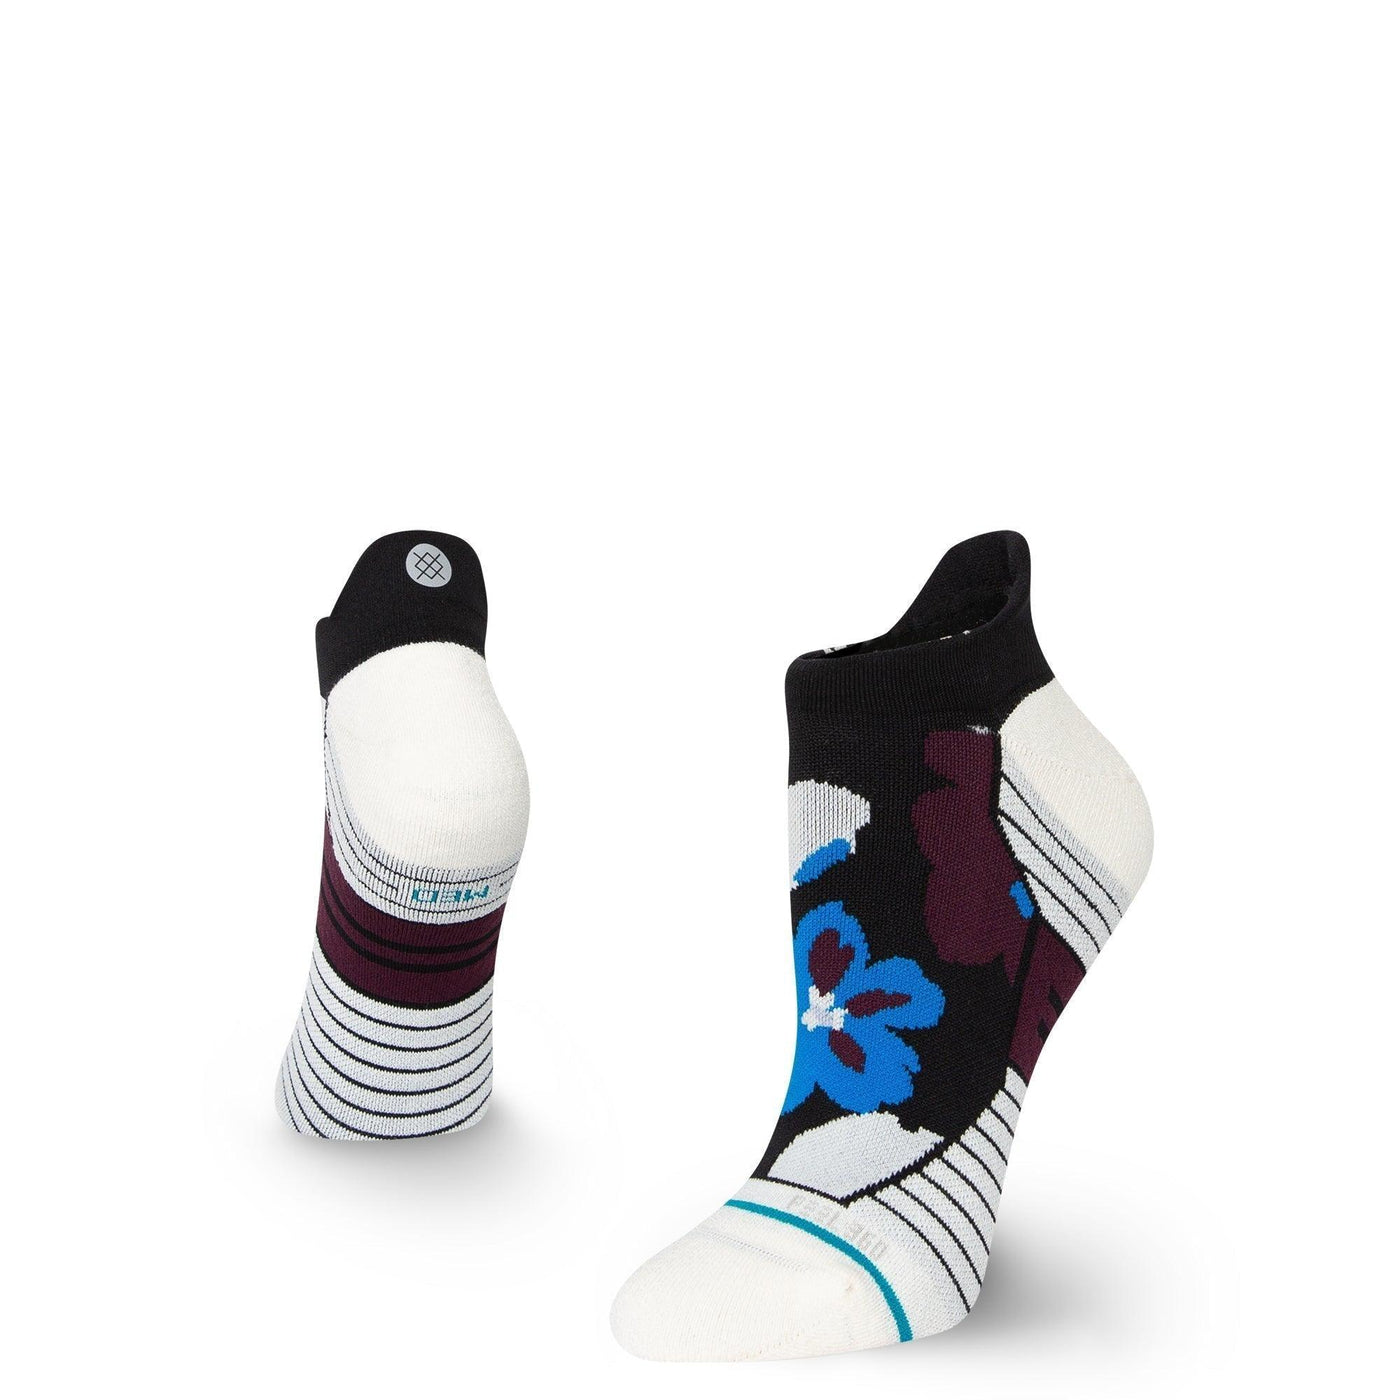 FIELDS | Women's Tab Ankle Socks - Stance - The Sock Monster